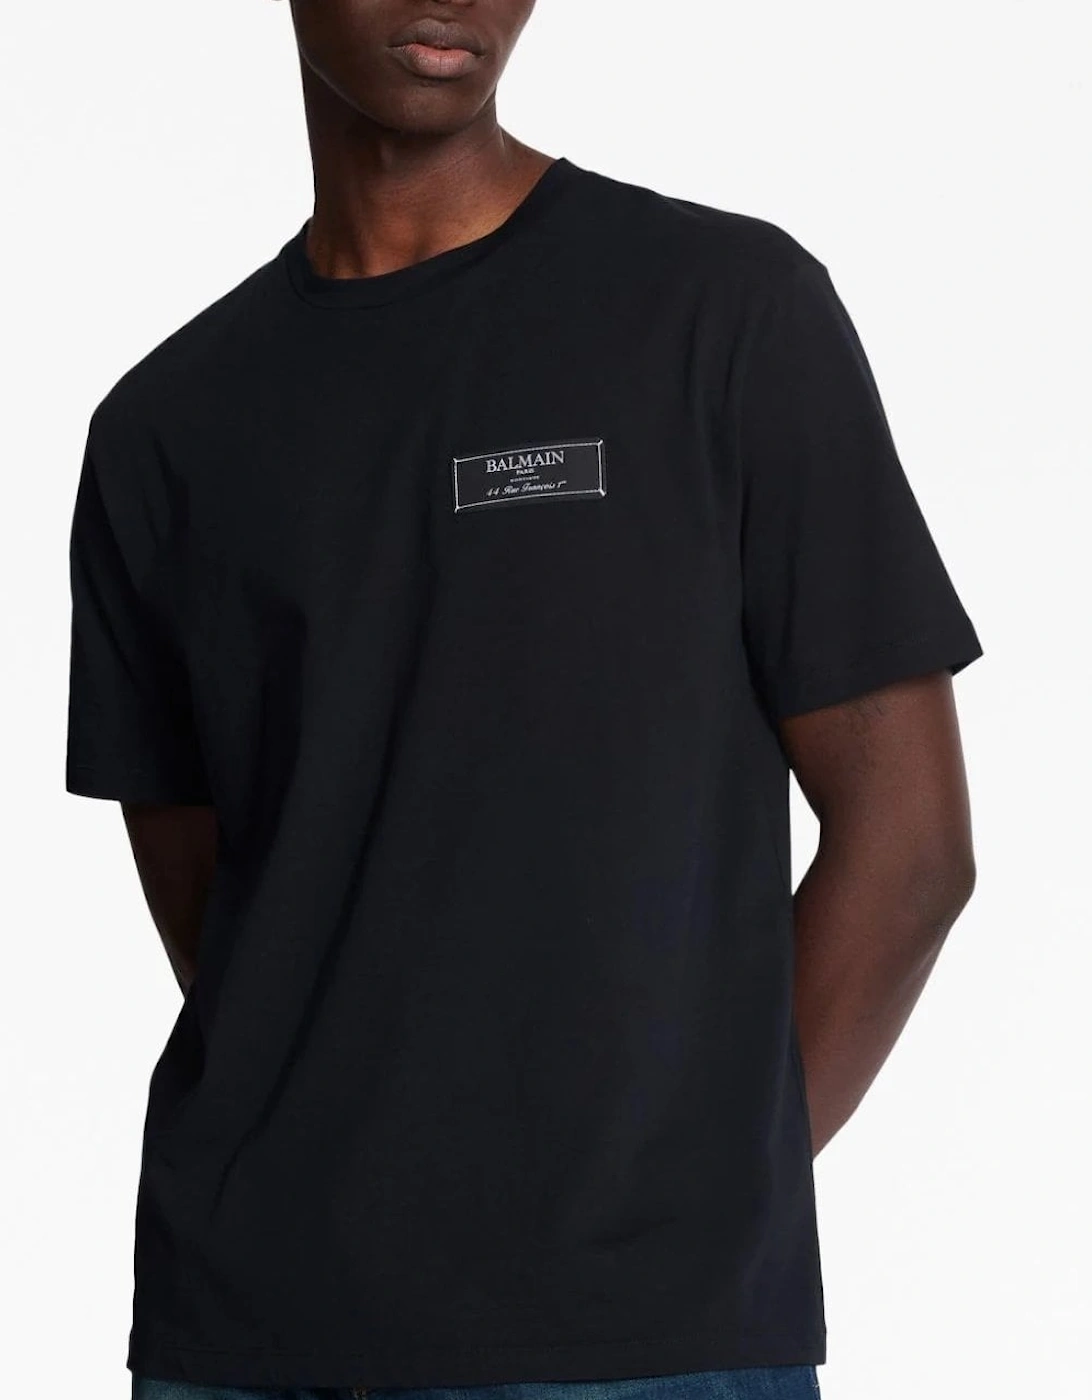 Paris Label T-shirt Straight Fit Black